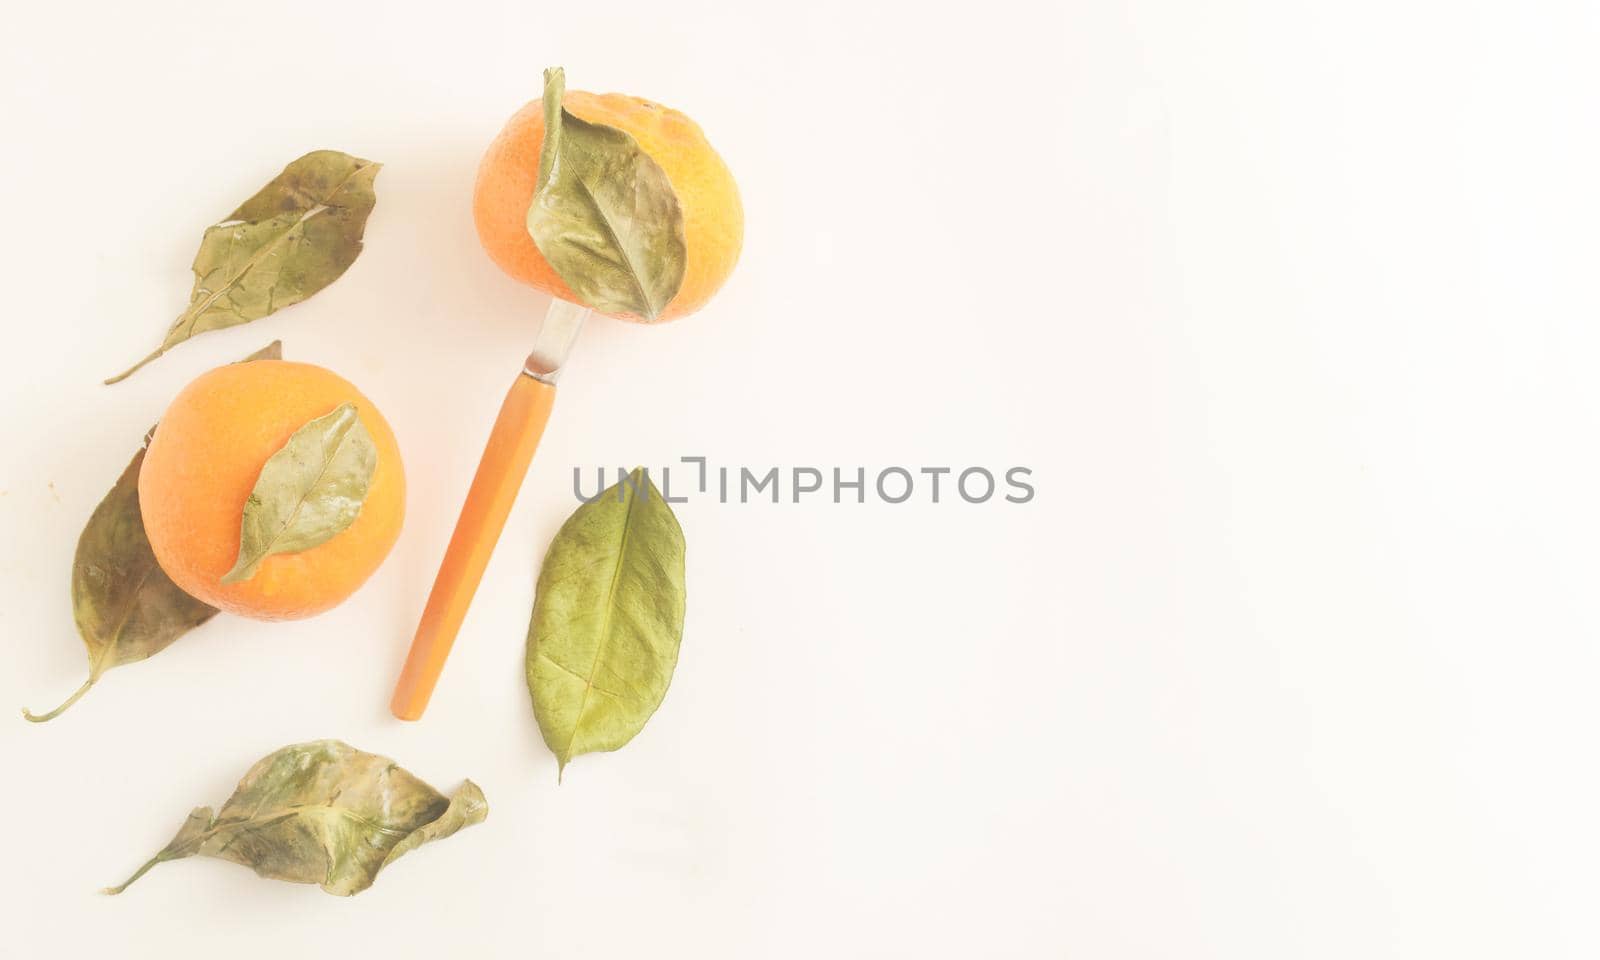 Minimalistic tropical organic fruit composition,copyspace. by andre_dechapelle